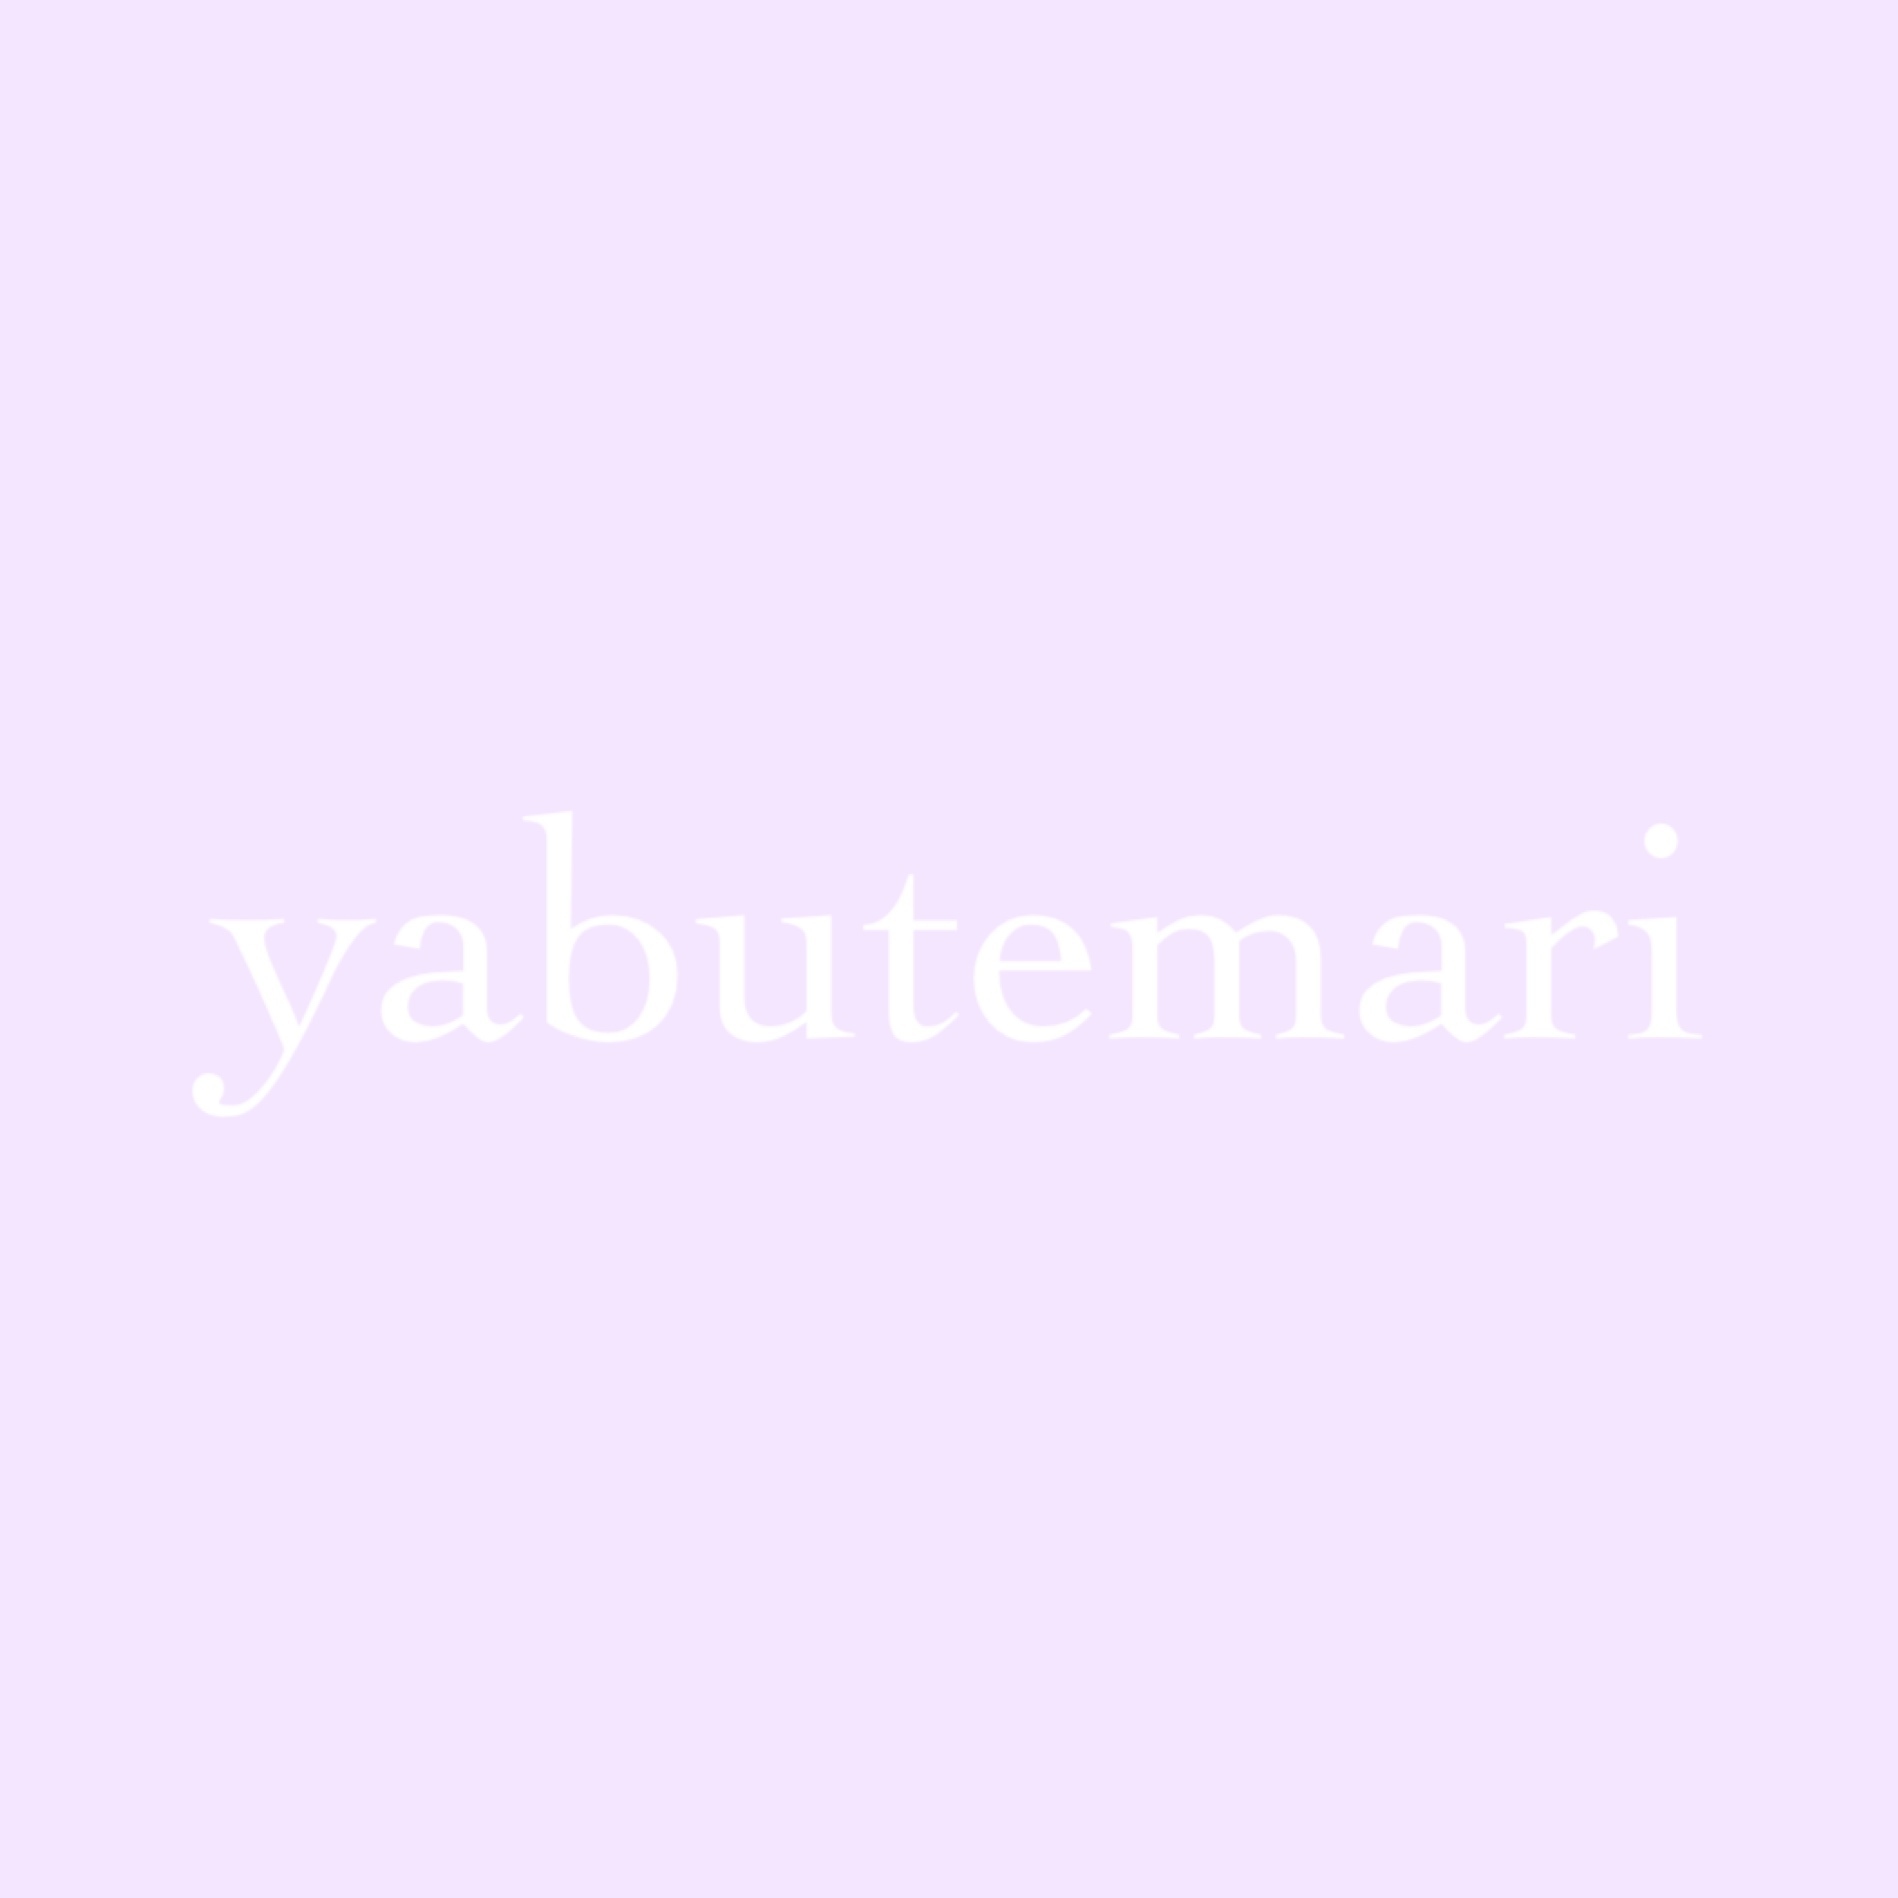 yabutemari